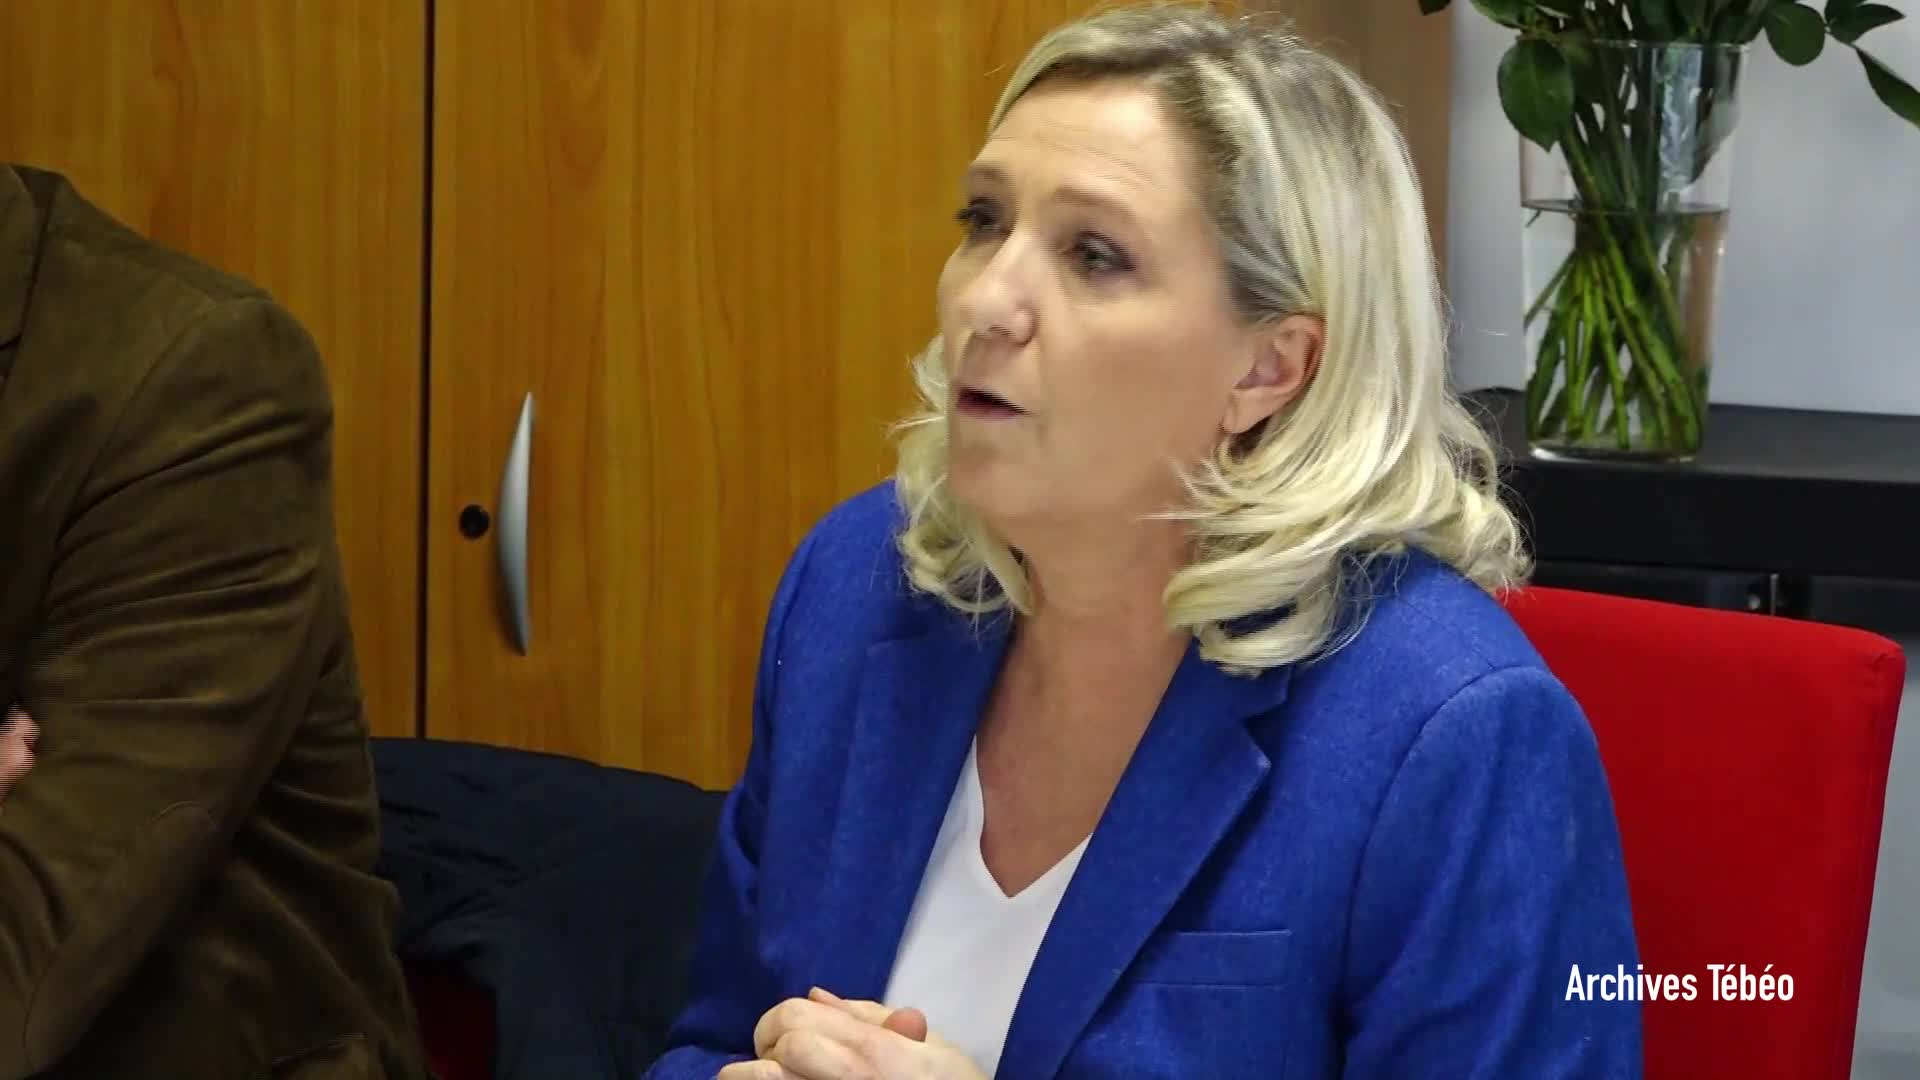 La venue de Marine Le Pen à Sein rencontre de nombreux opposants en Bretagne (Le Télégramme)